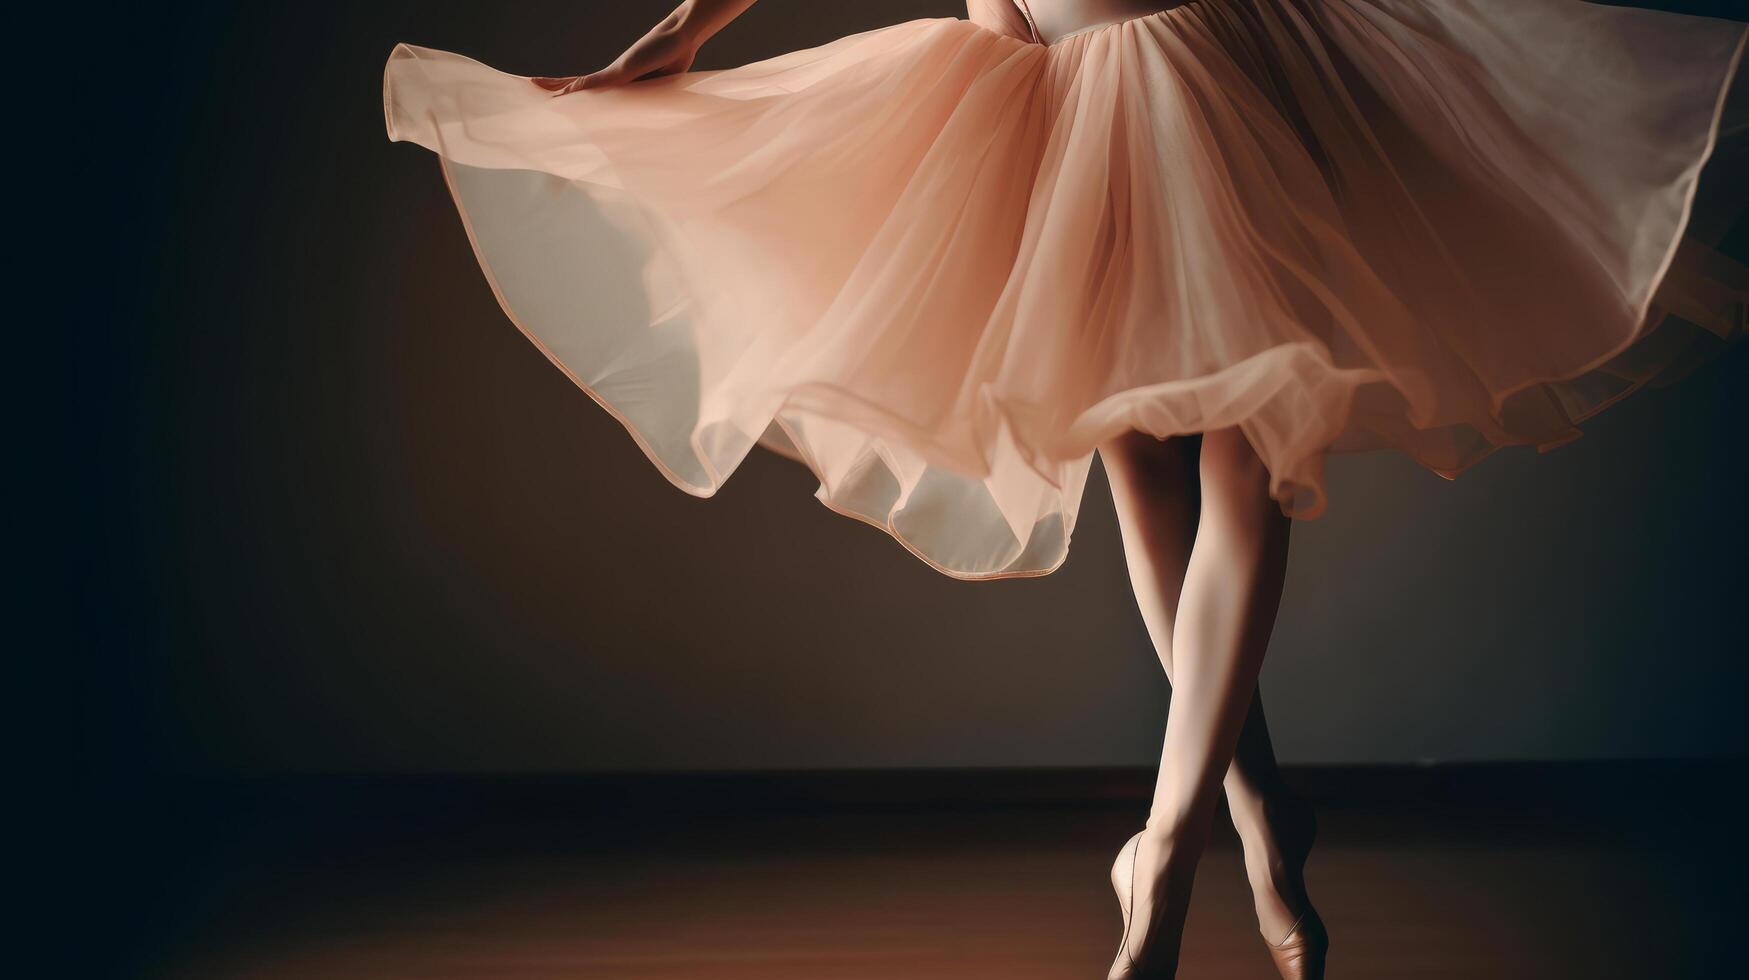 Ballerina background. Illustration photo